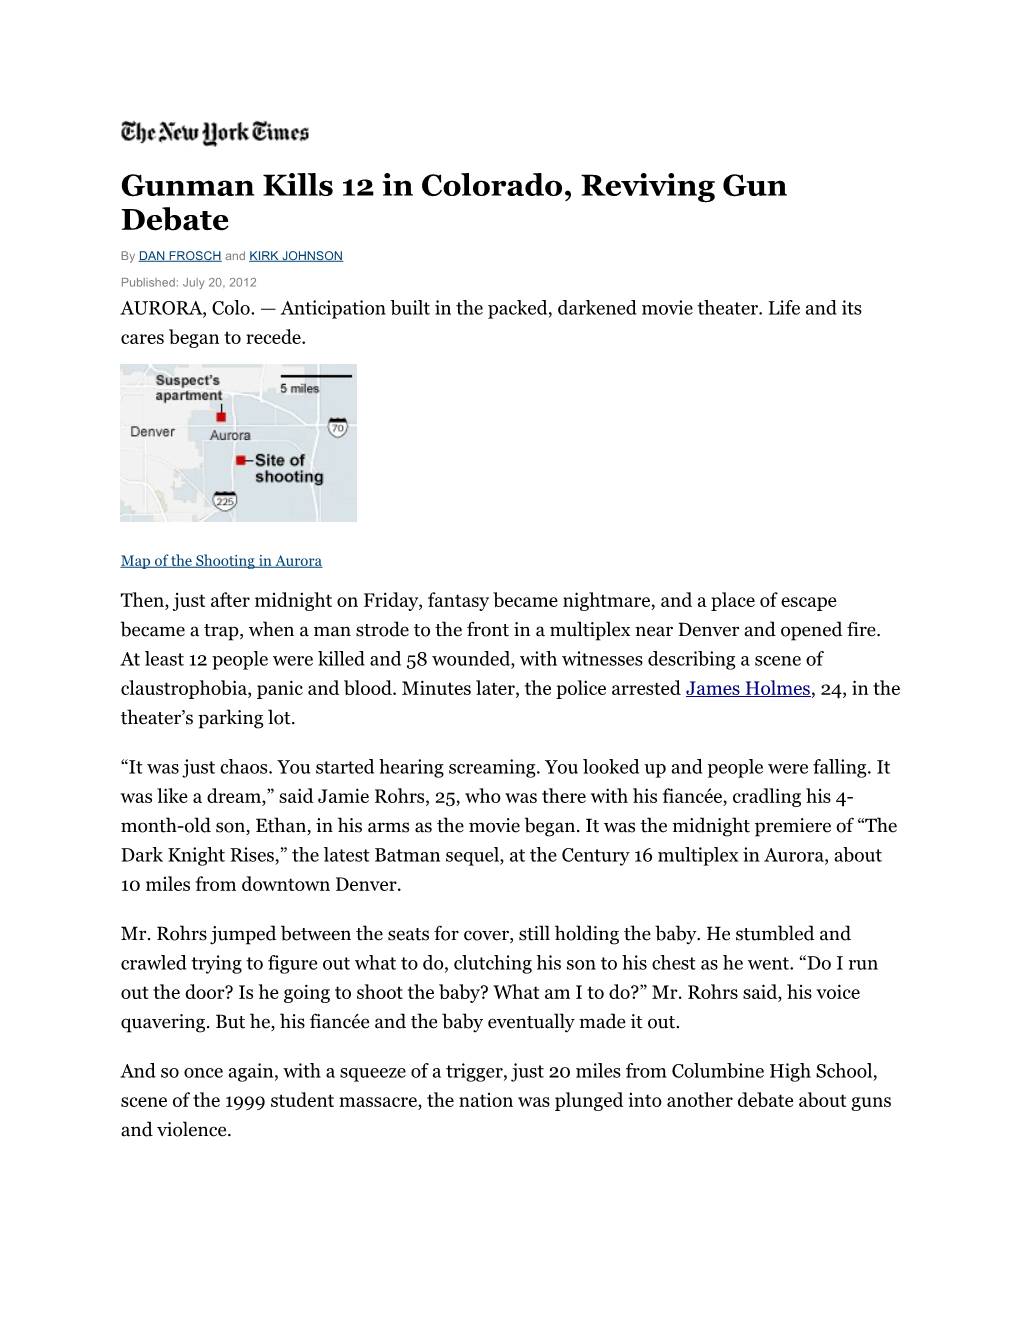 Gunman Kills 12 in Colorado, Reviving Gun Debate